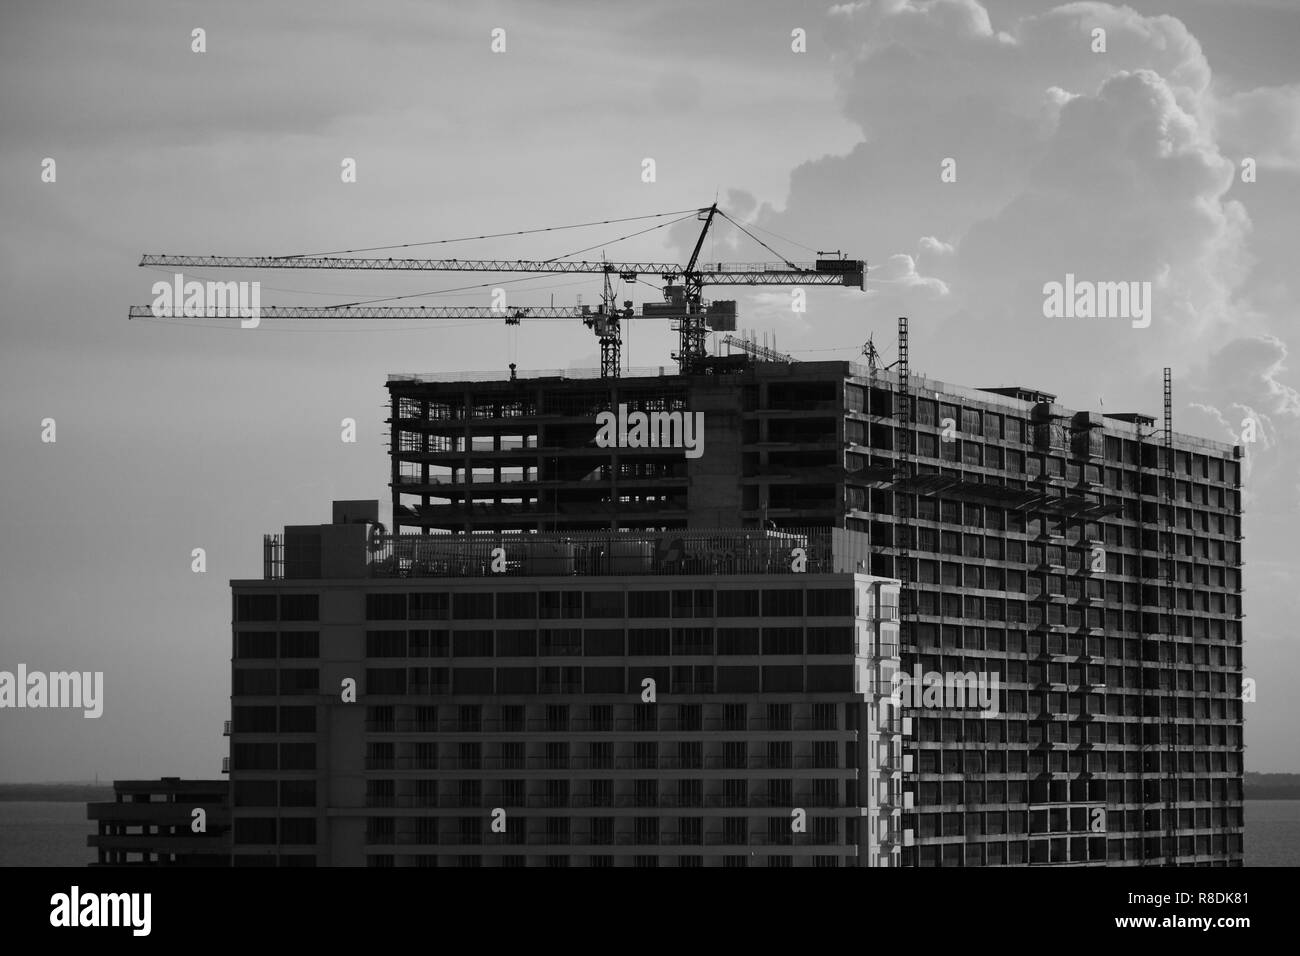 Processus de construction d'immeubles d'appartements, de l'océan, sur la plage en noir et blanc photo monochrome Banque D'Images